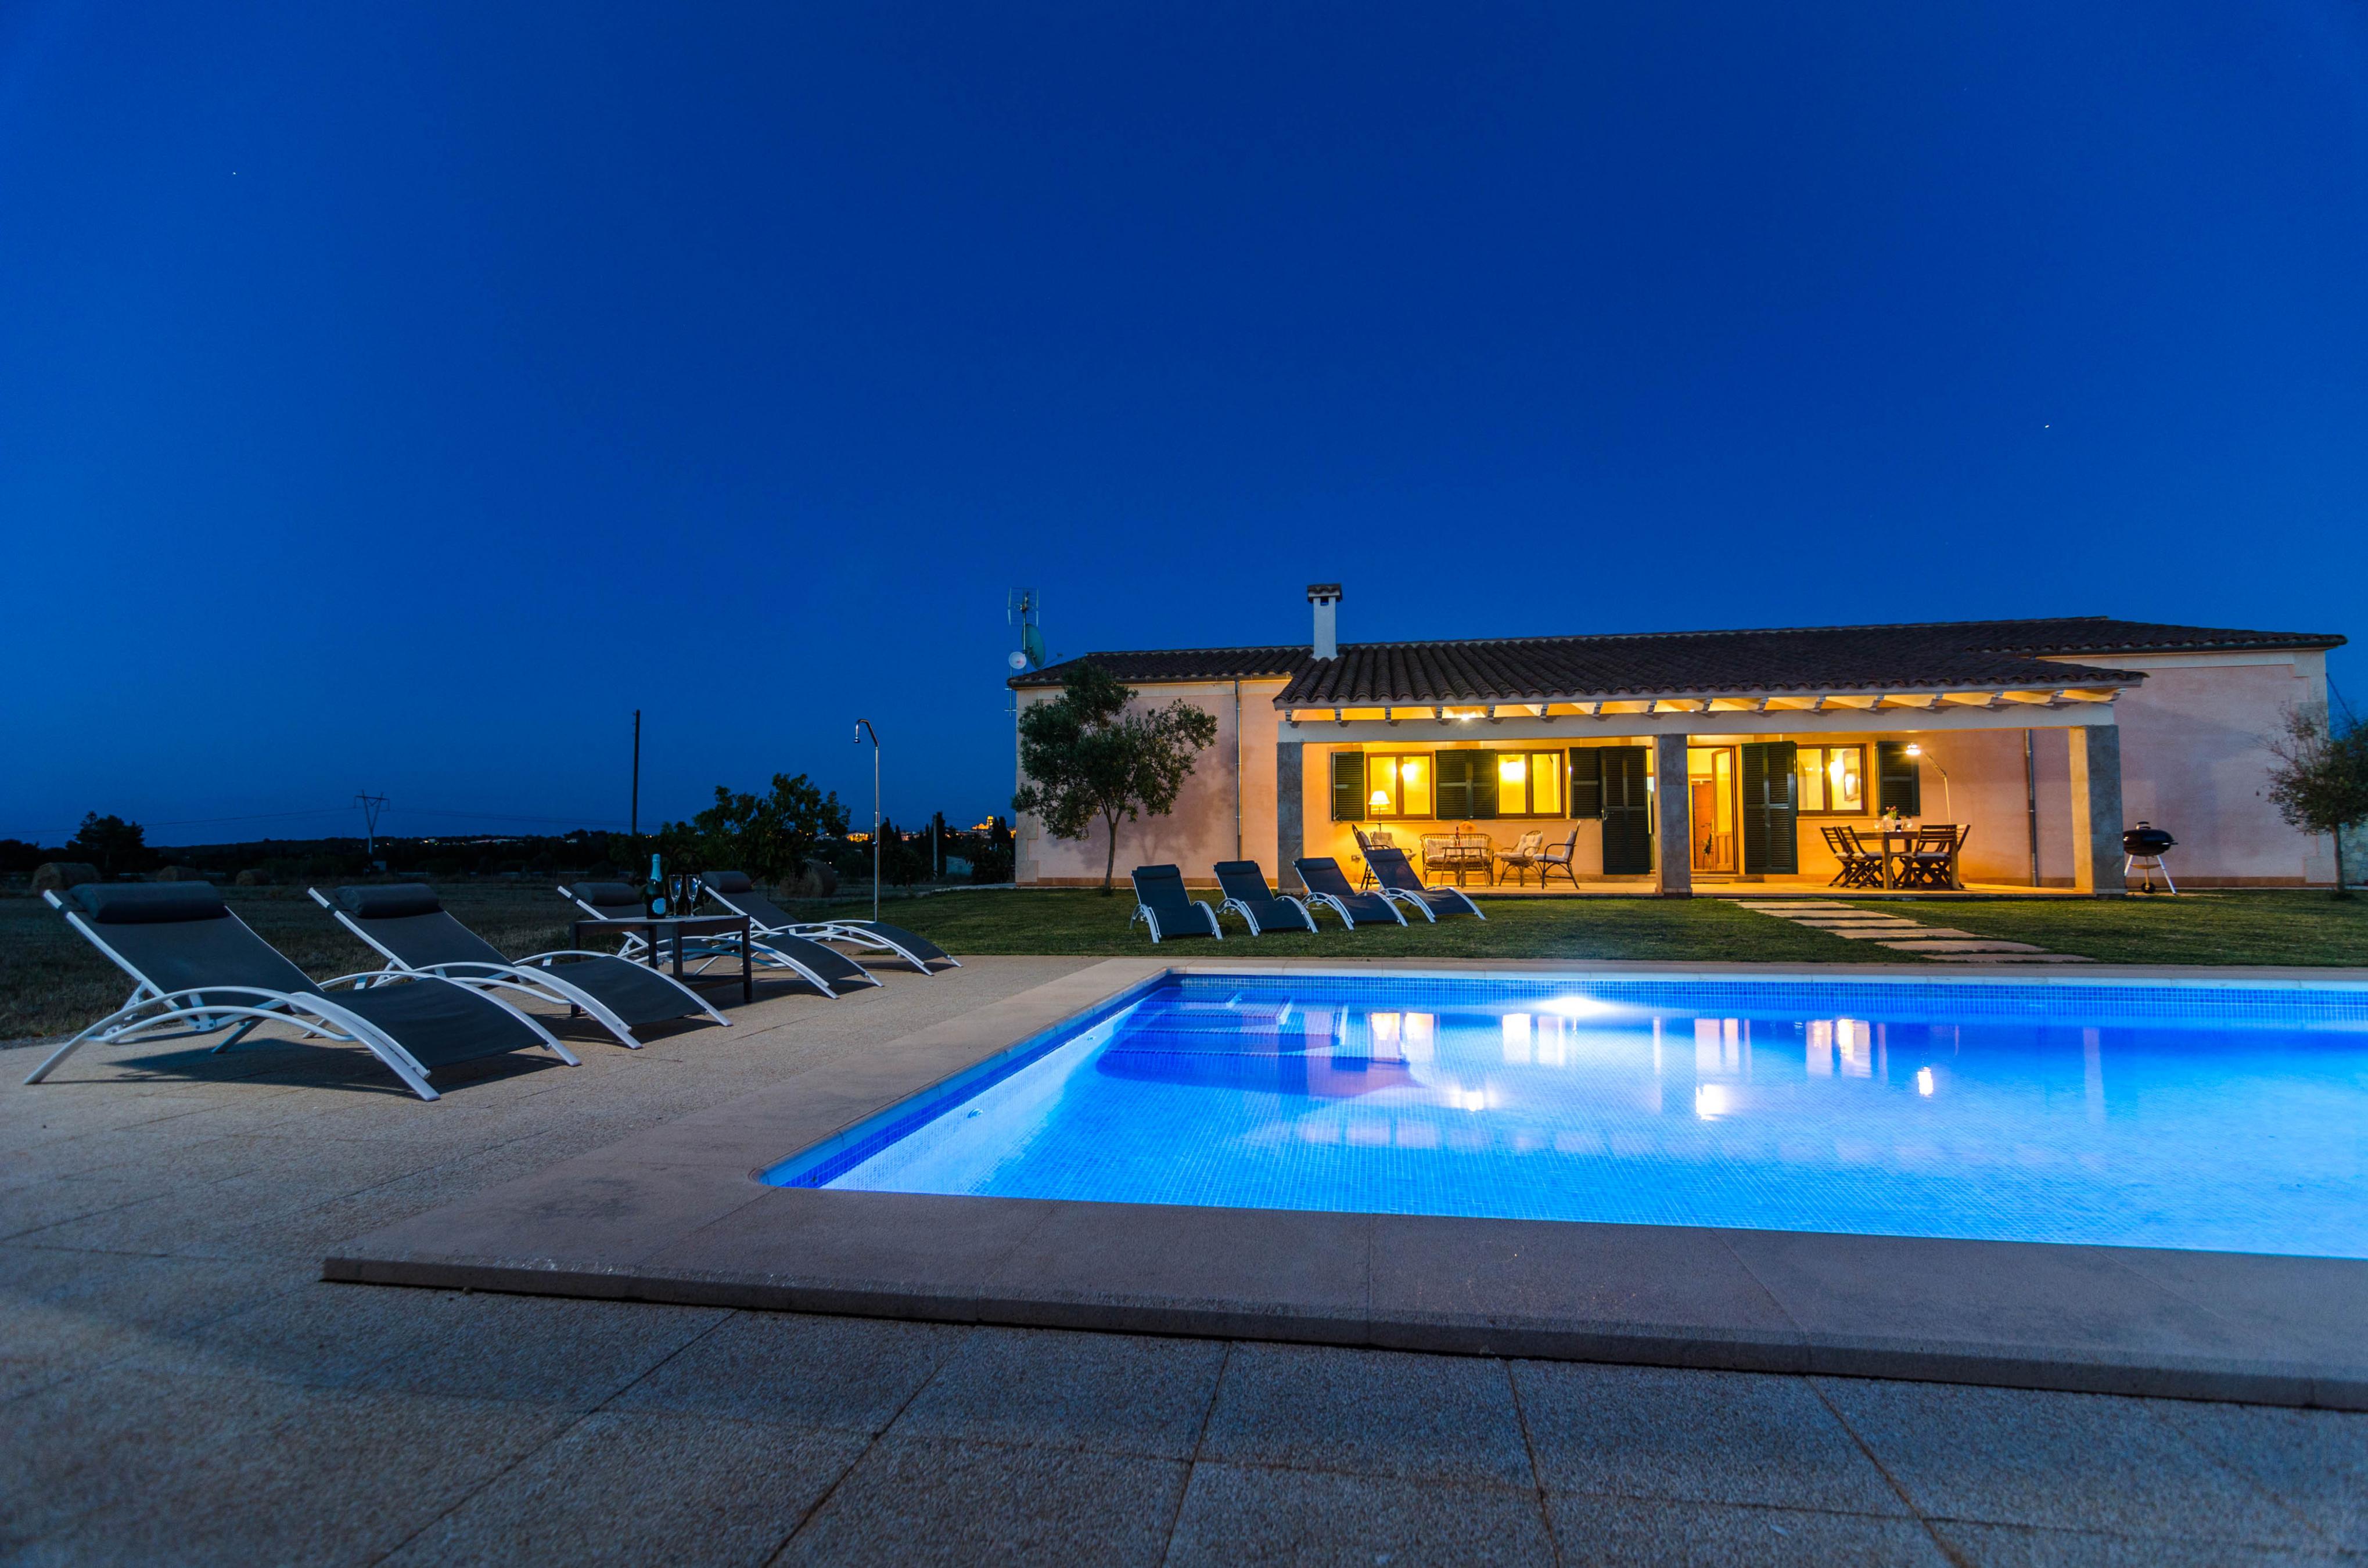 S'ESTACIO - Villa with private pool in Muro. Free WiFi